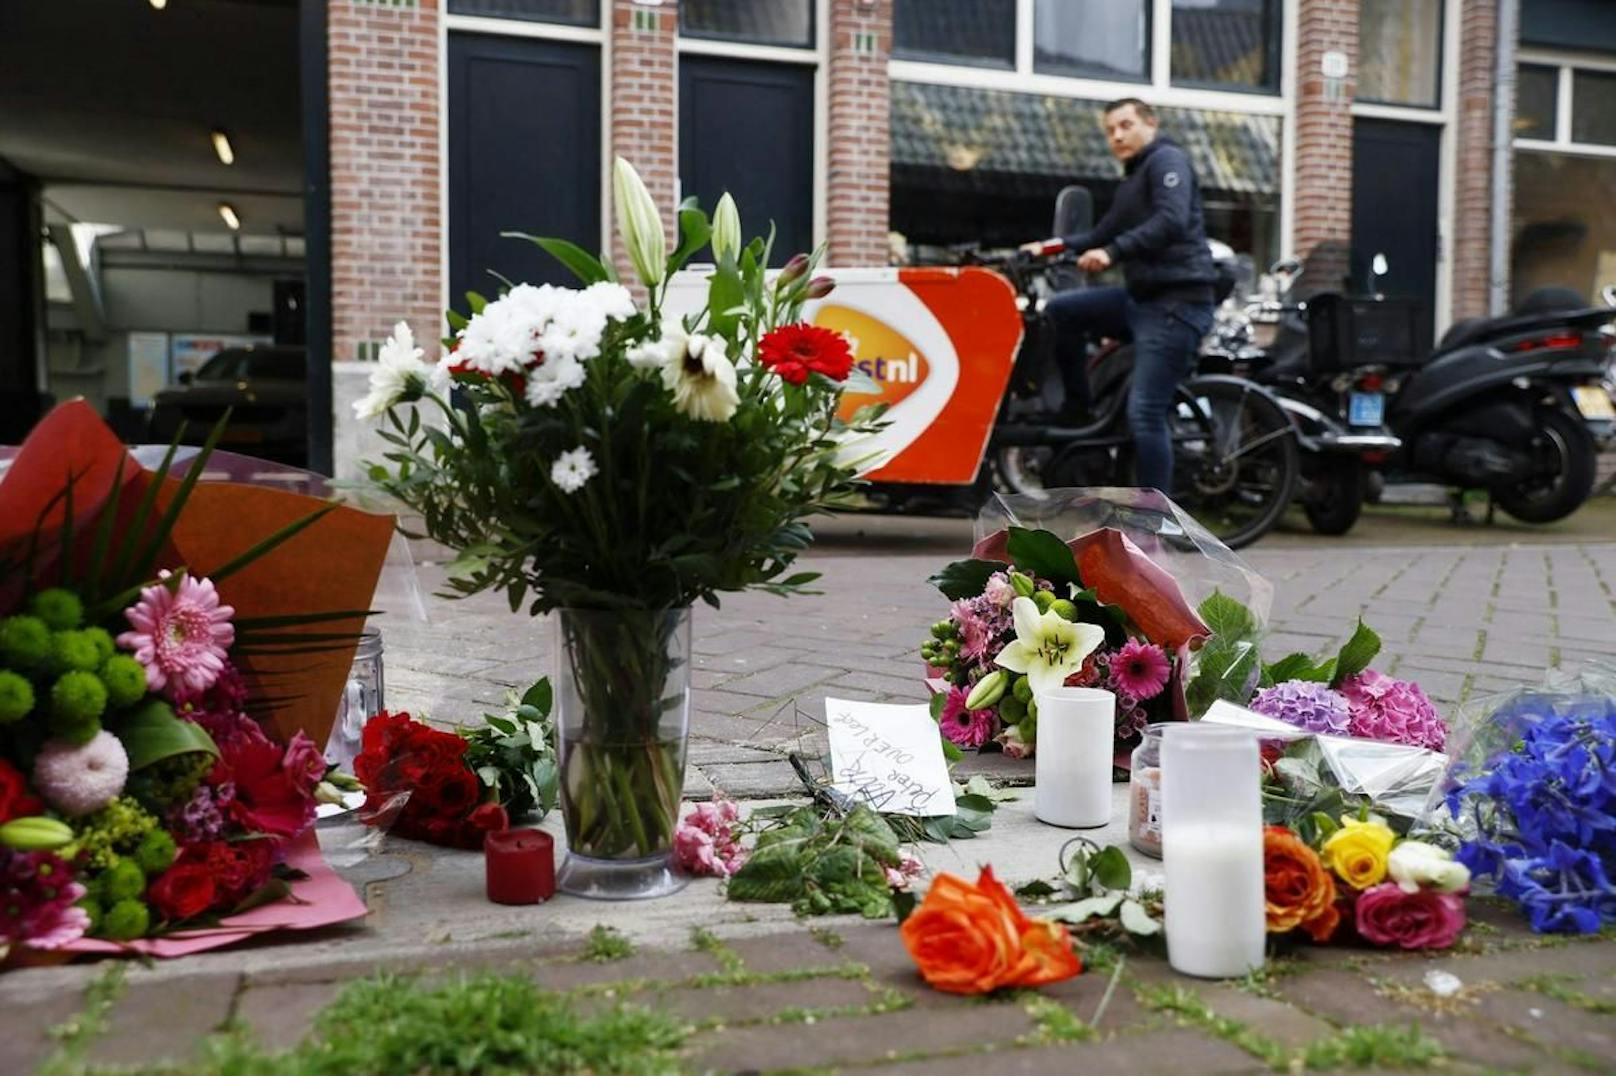 Viele legten dort Blumen und Botschaften für den schwer verletzten Journalisten nieder.